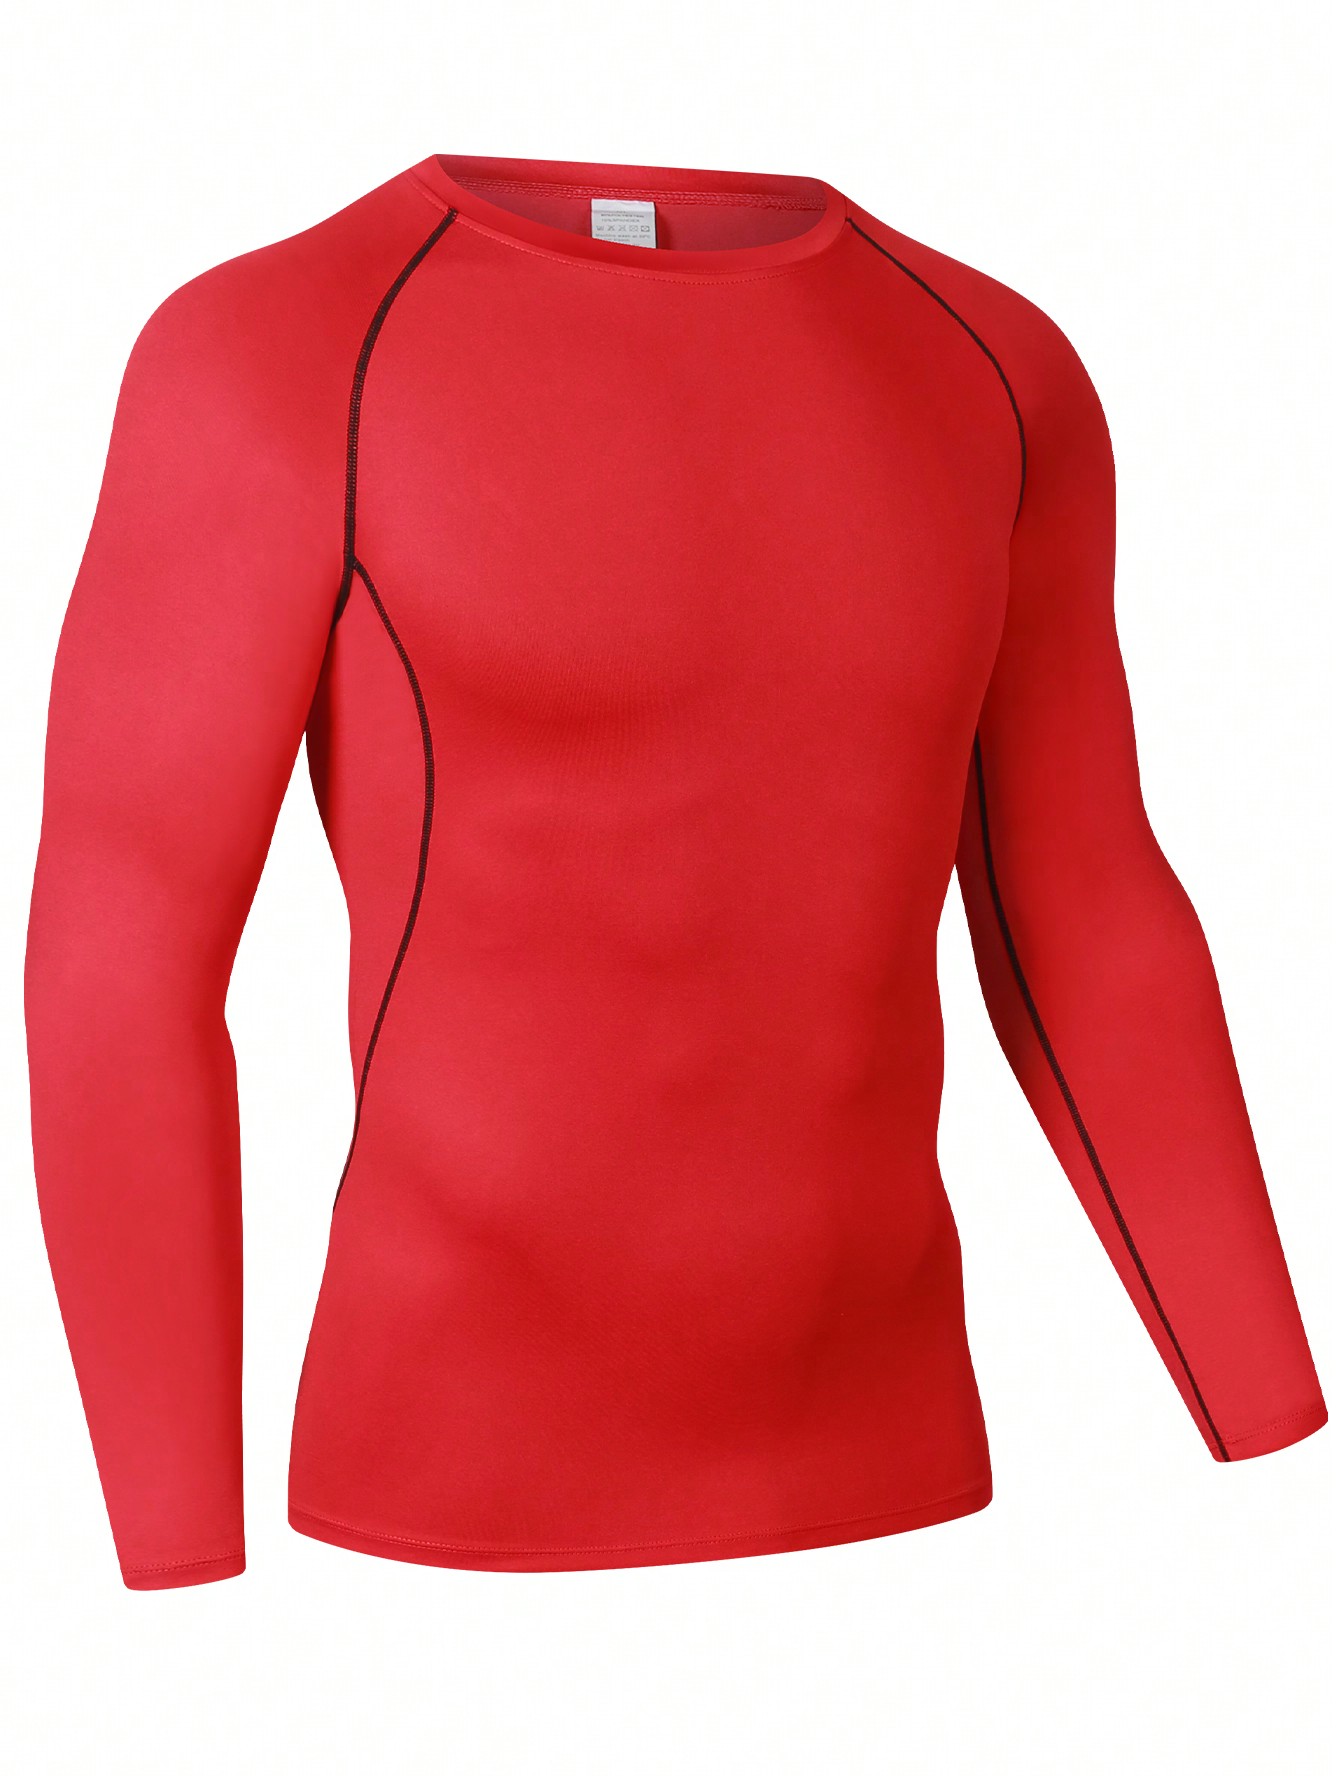 Мужская эластичная компрессионная рубашка для фитнеса с длинными рукавами, красный новинка 2021 походные и рыболовные рубашки gamakatsu спортивная быстросохнущая мужская одежда для рыбалки одежда для велоспорта и рыбалки